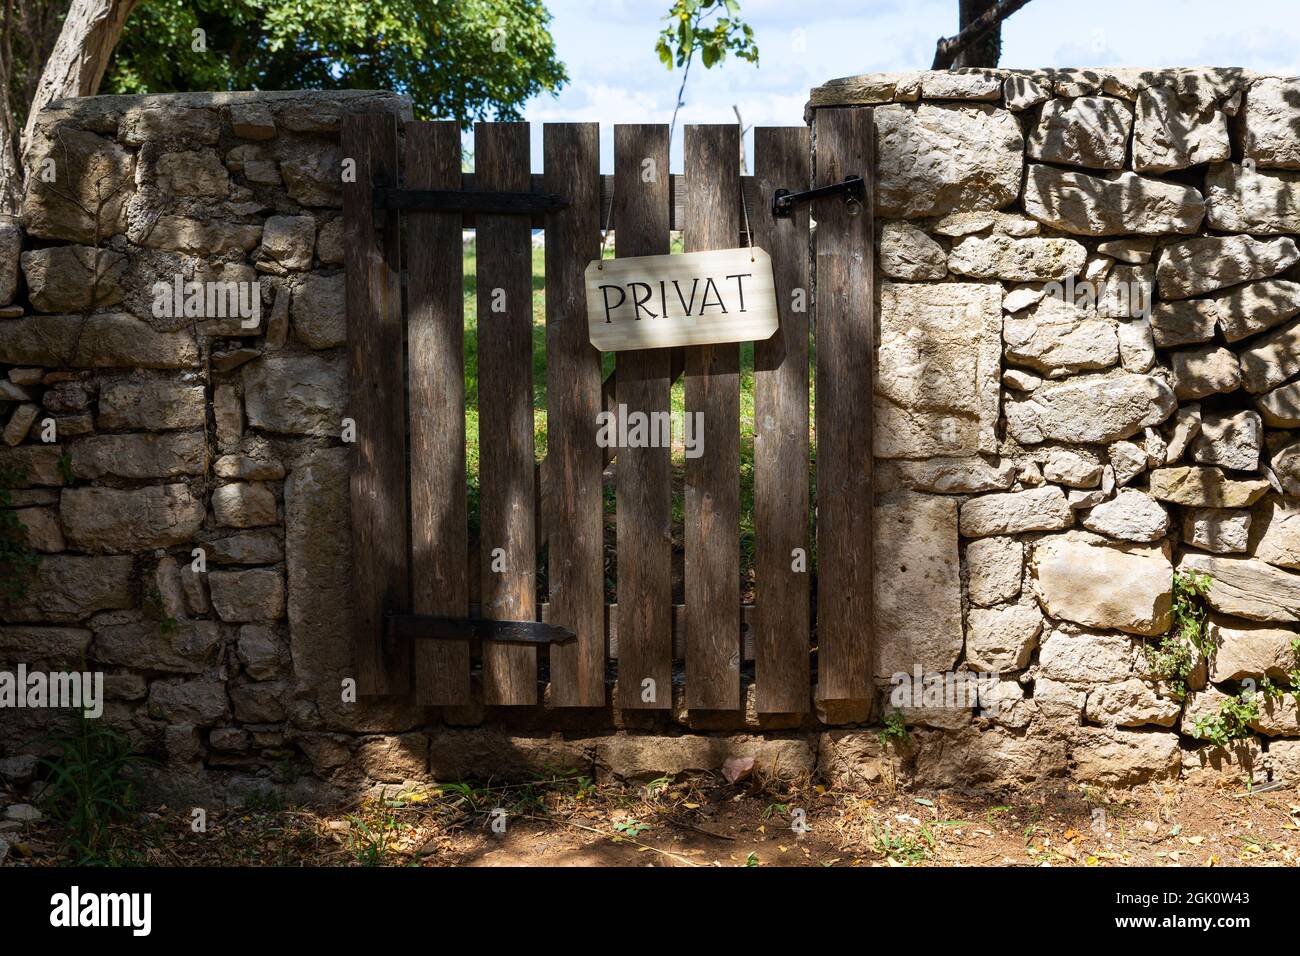 Garden door showing sign 'Private' Stock Photo